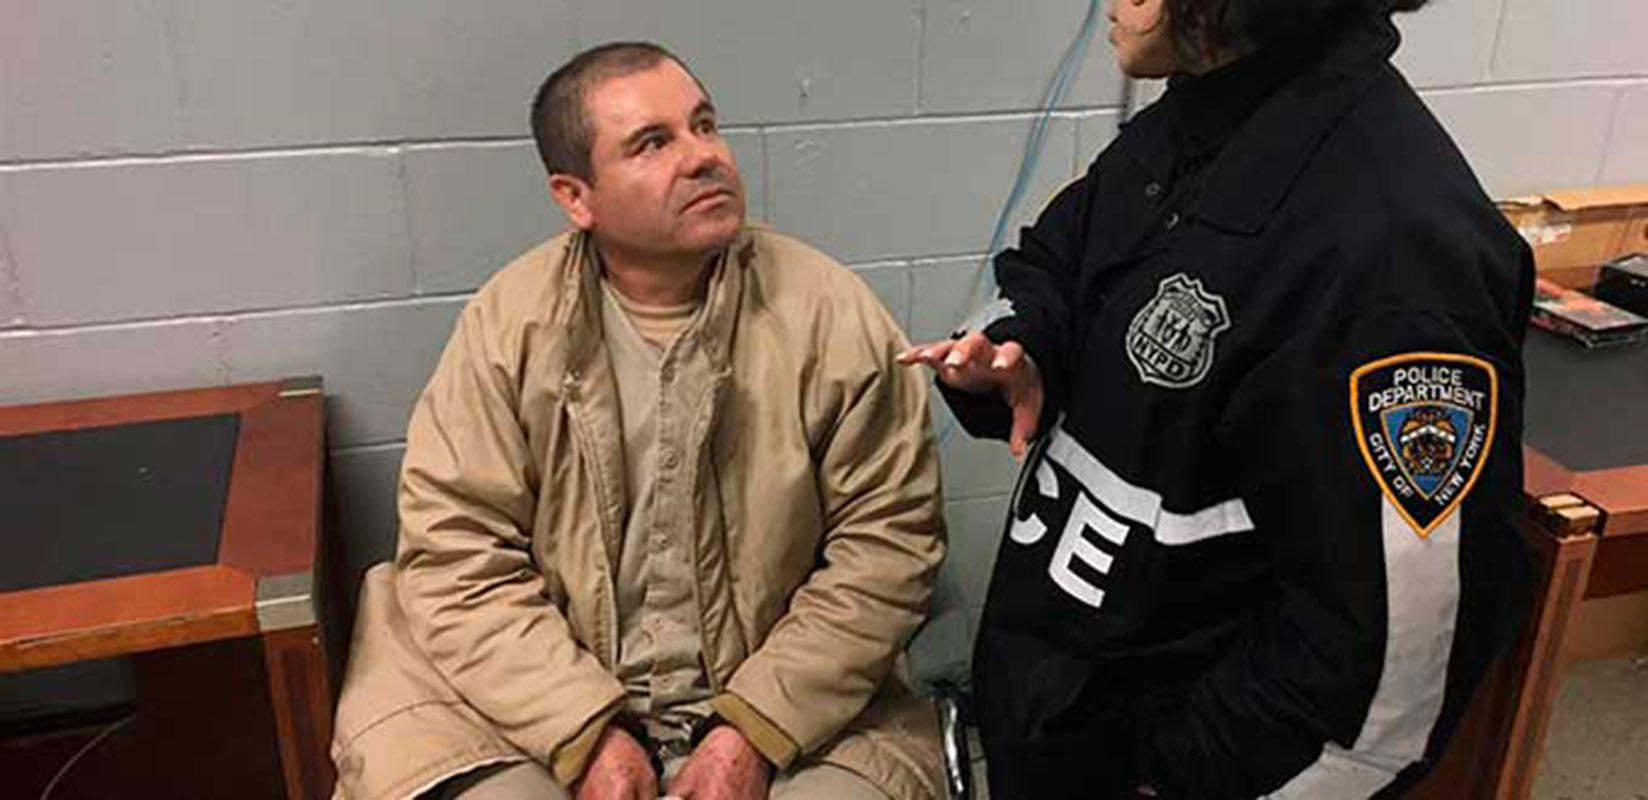 El 5 de septiembre se seleccionará el jurado del juicio contra "El Chapo"